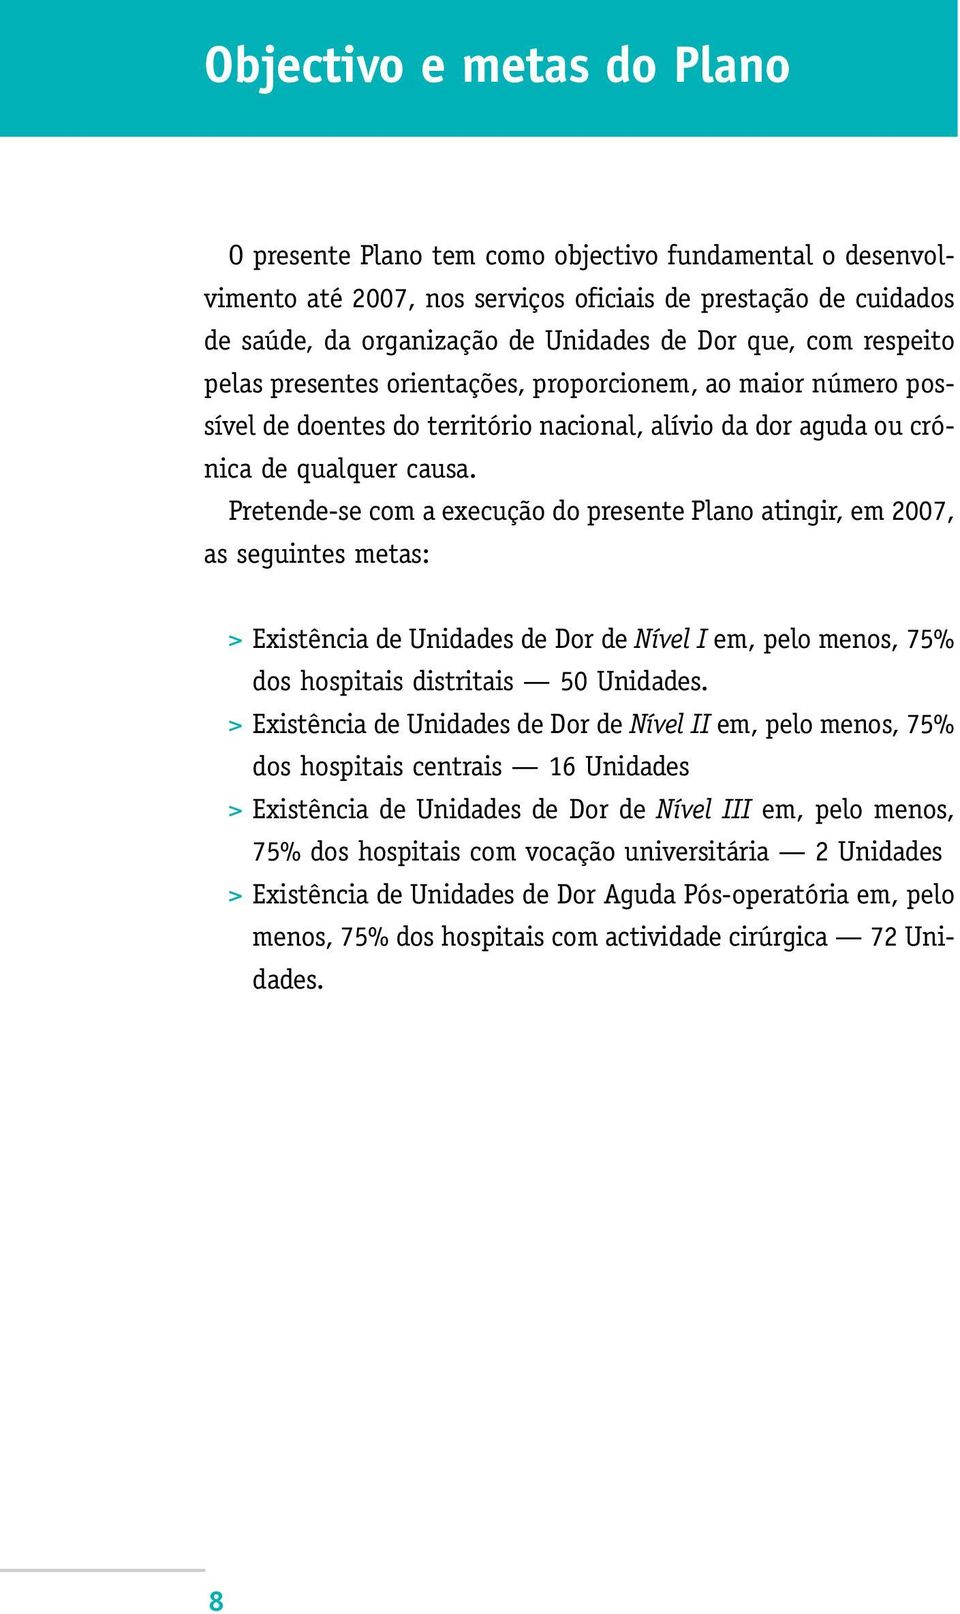 Pretende-se com a execução do presente Plano atingir, em 2007, as seguintes metas: > Existência de Unidades de Dor de Nível I em, pelo menos, 75% dos hospitais distritais 50 Unidades.